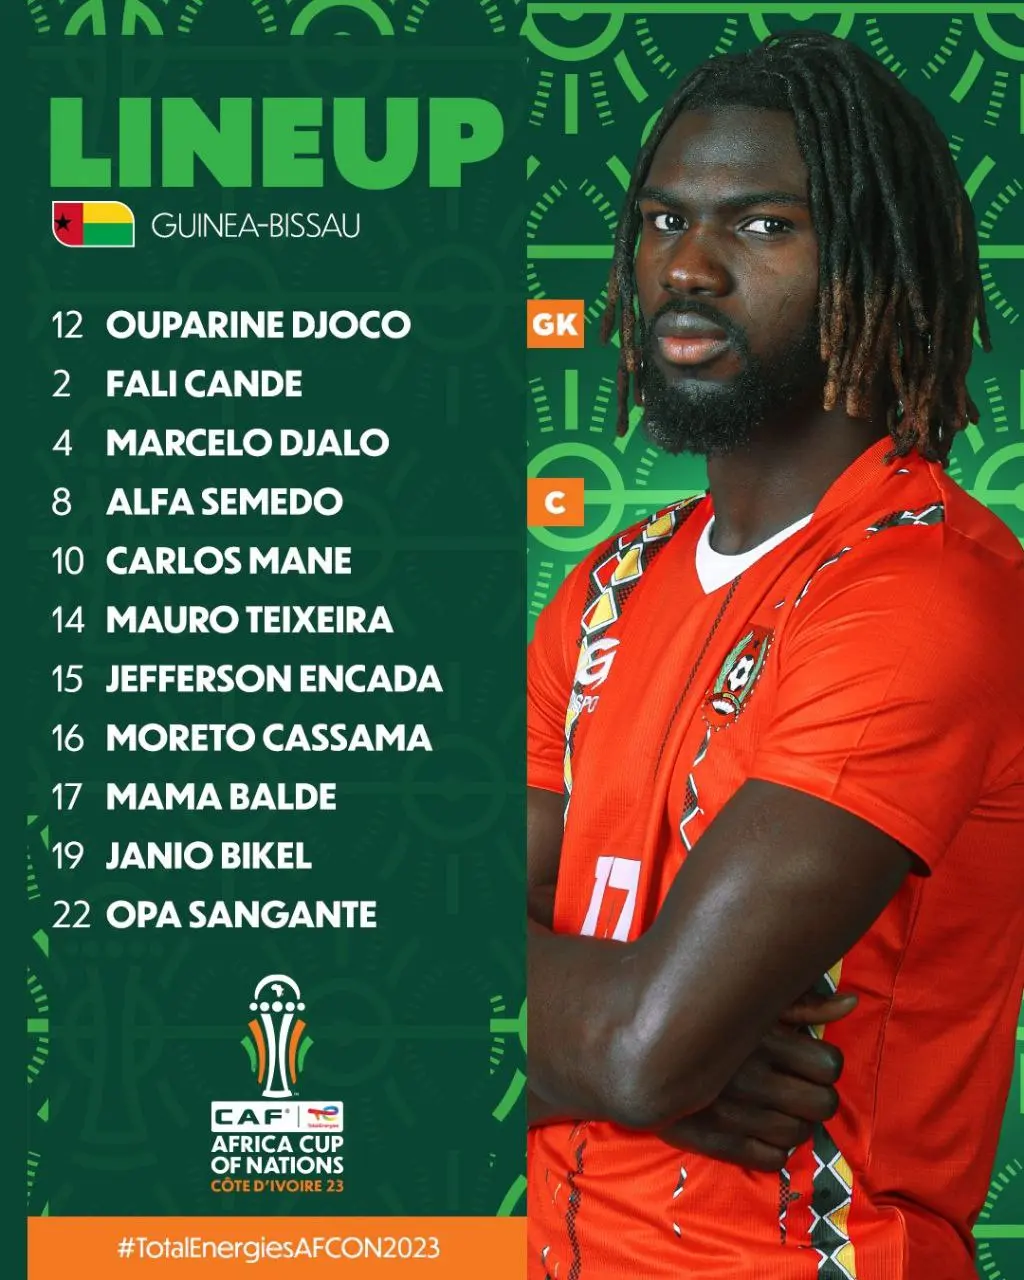 اعلام ترکیب تیم های ملی ساحل عاج و گینه بیسائو